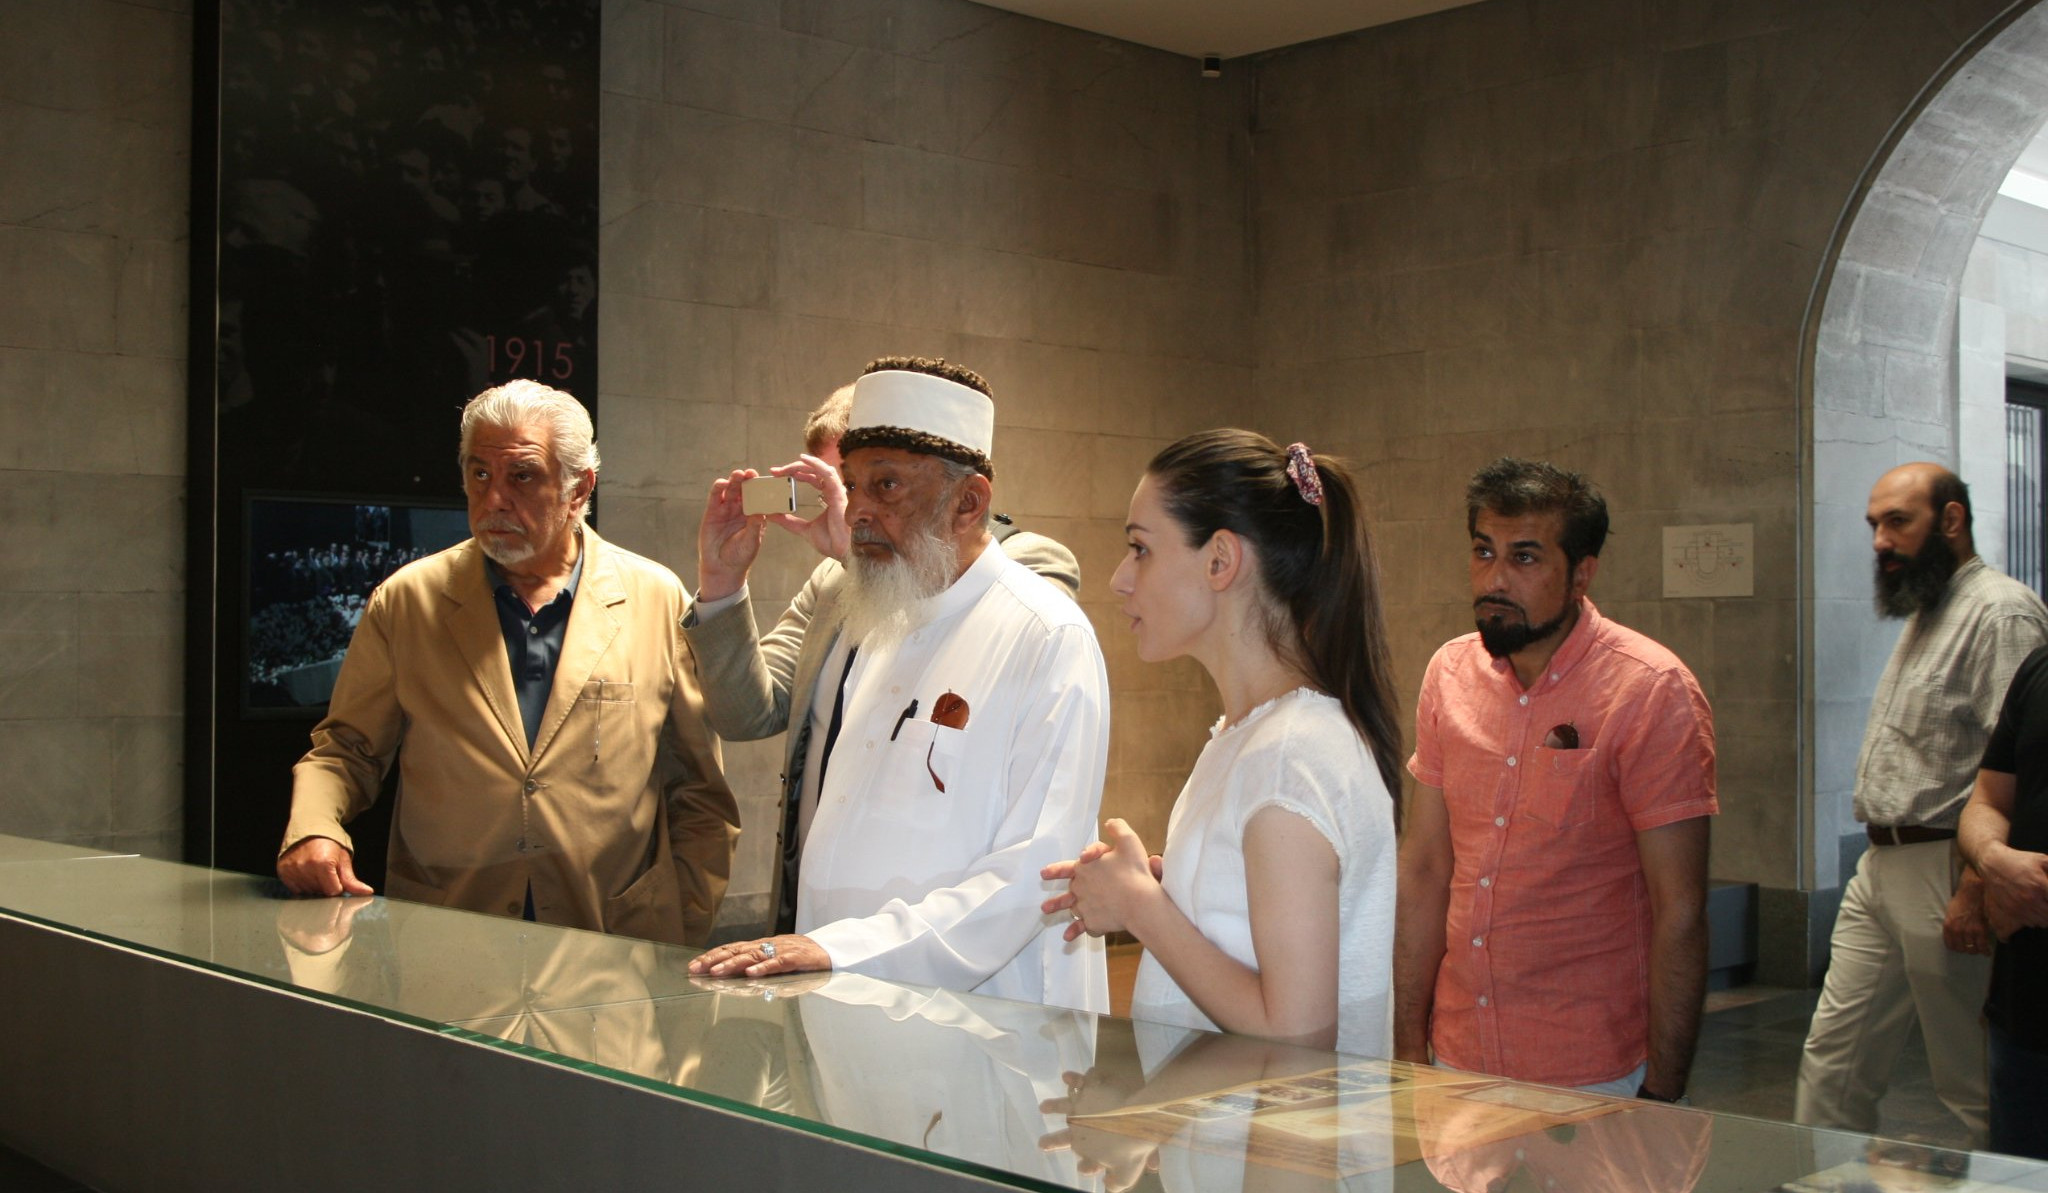 Հայտնի փիլիսոփա Շեյխ Իմրան Հուսեյնն այցելել է Հայոց ցեղասպանության թանգարան